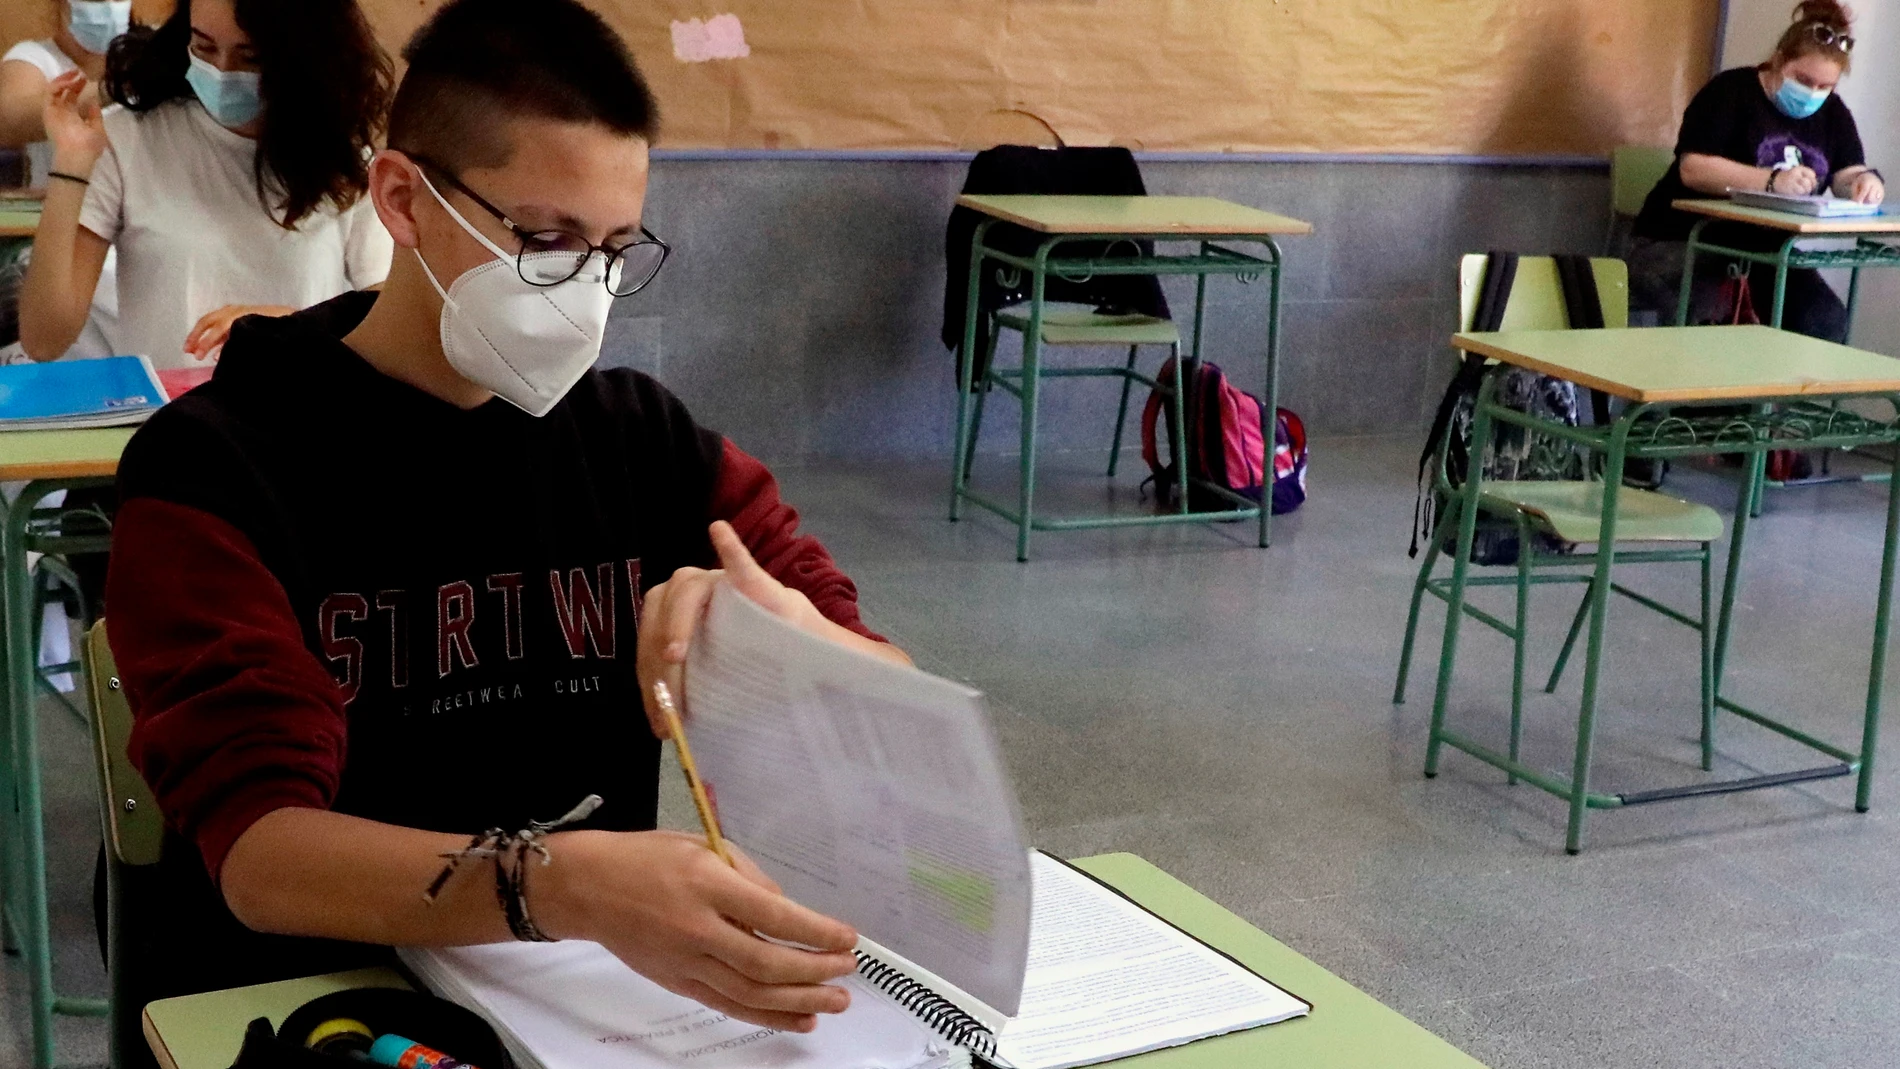  Así será la Educación Secundaria en Madrid: mascarilla obligatoria, mamparas y ventilación